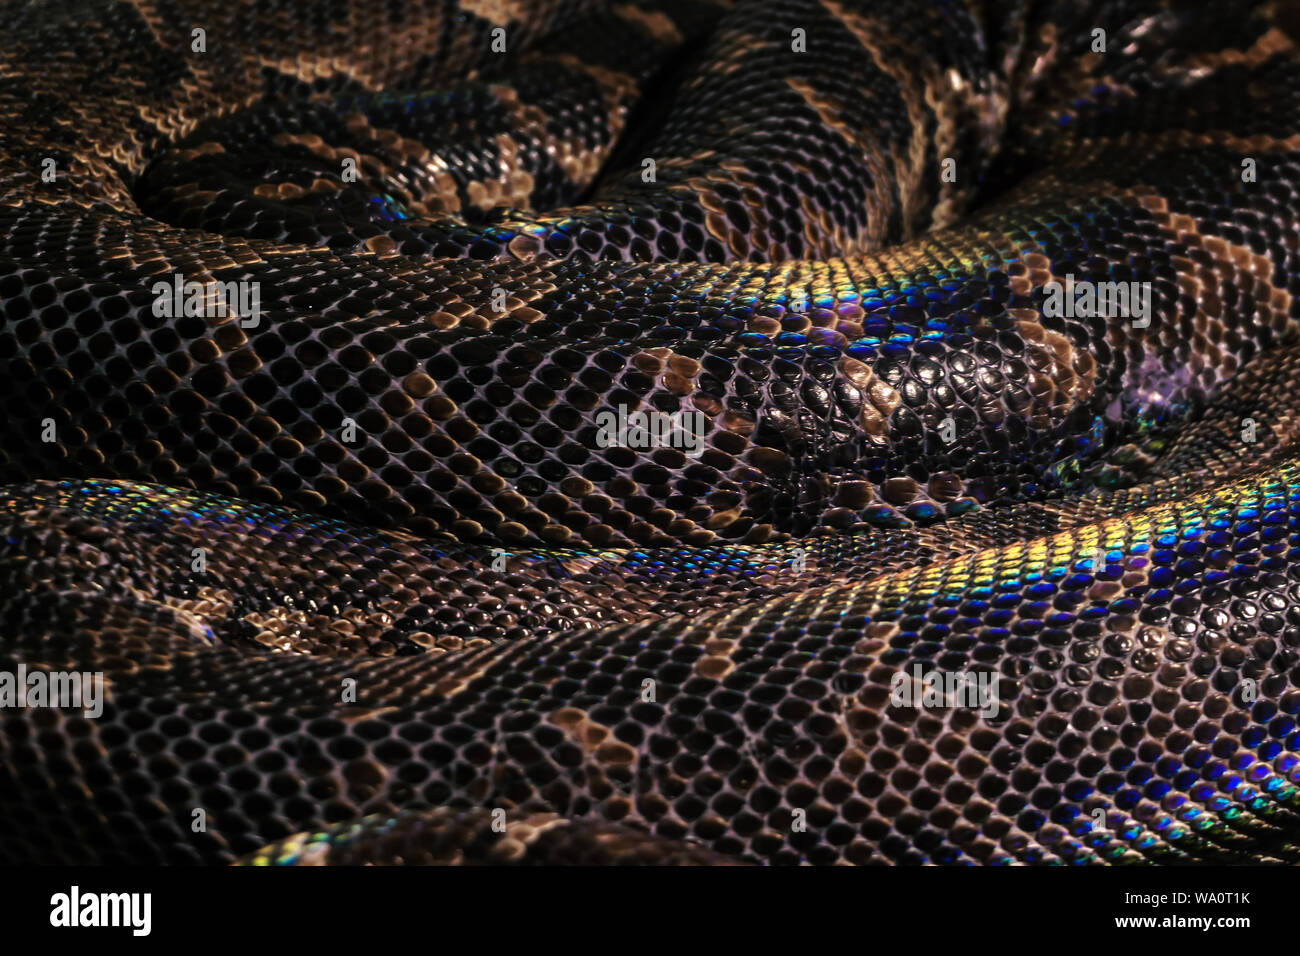 Contexte - bagues serpent enroulé animé avec de grandes écailles brunes avec rainbow met en lumière Banque D'Images